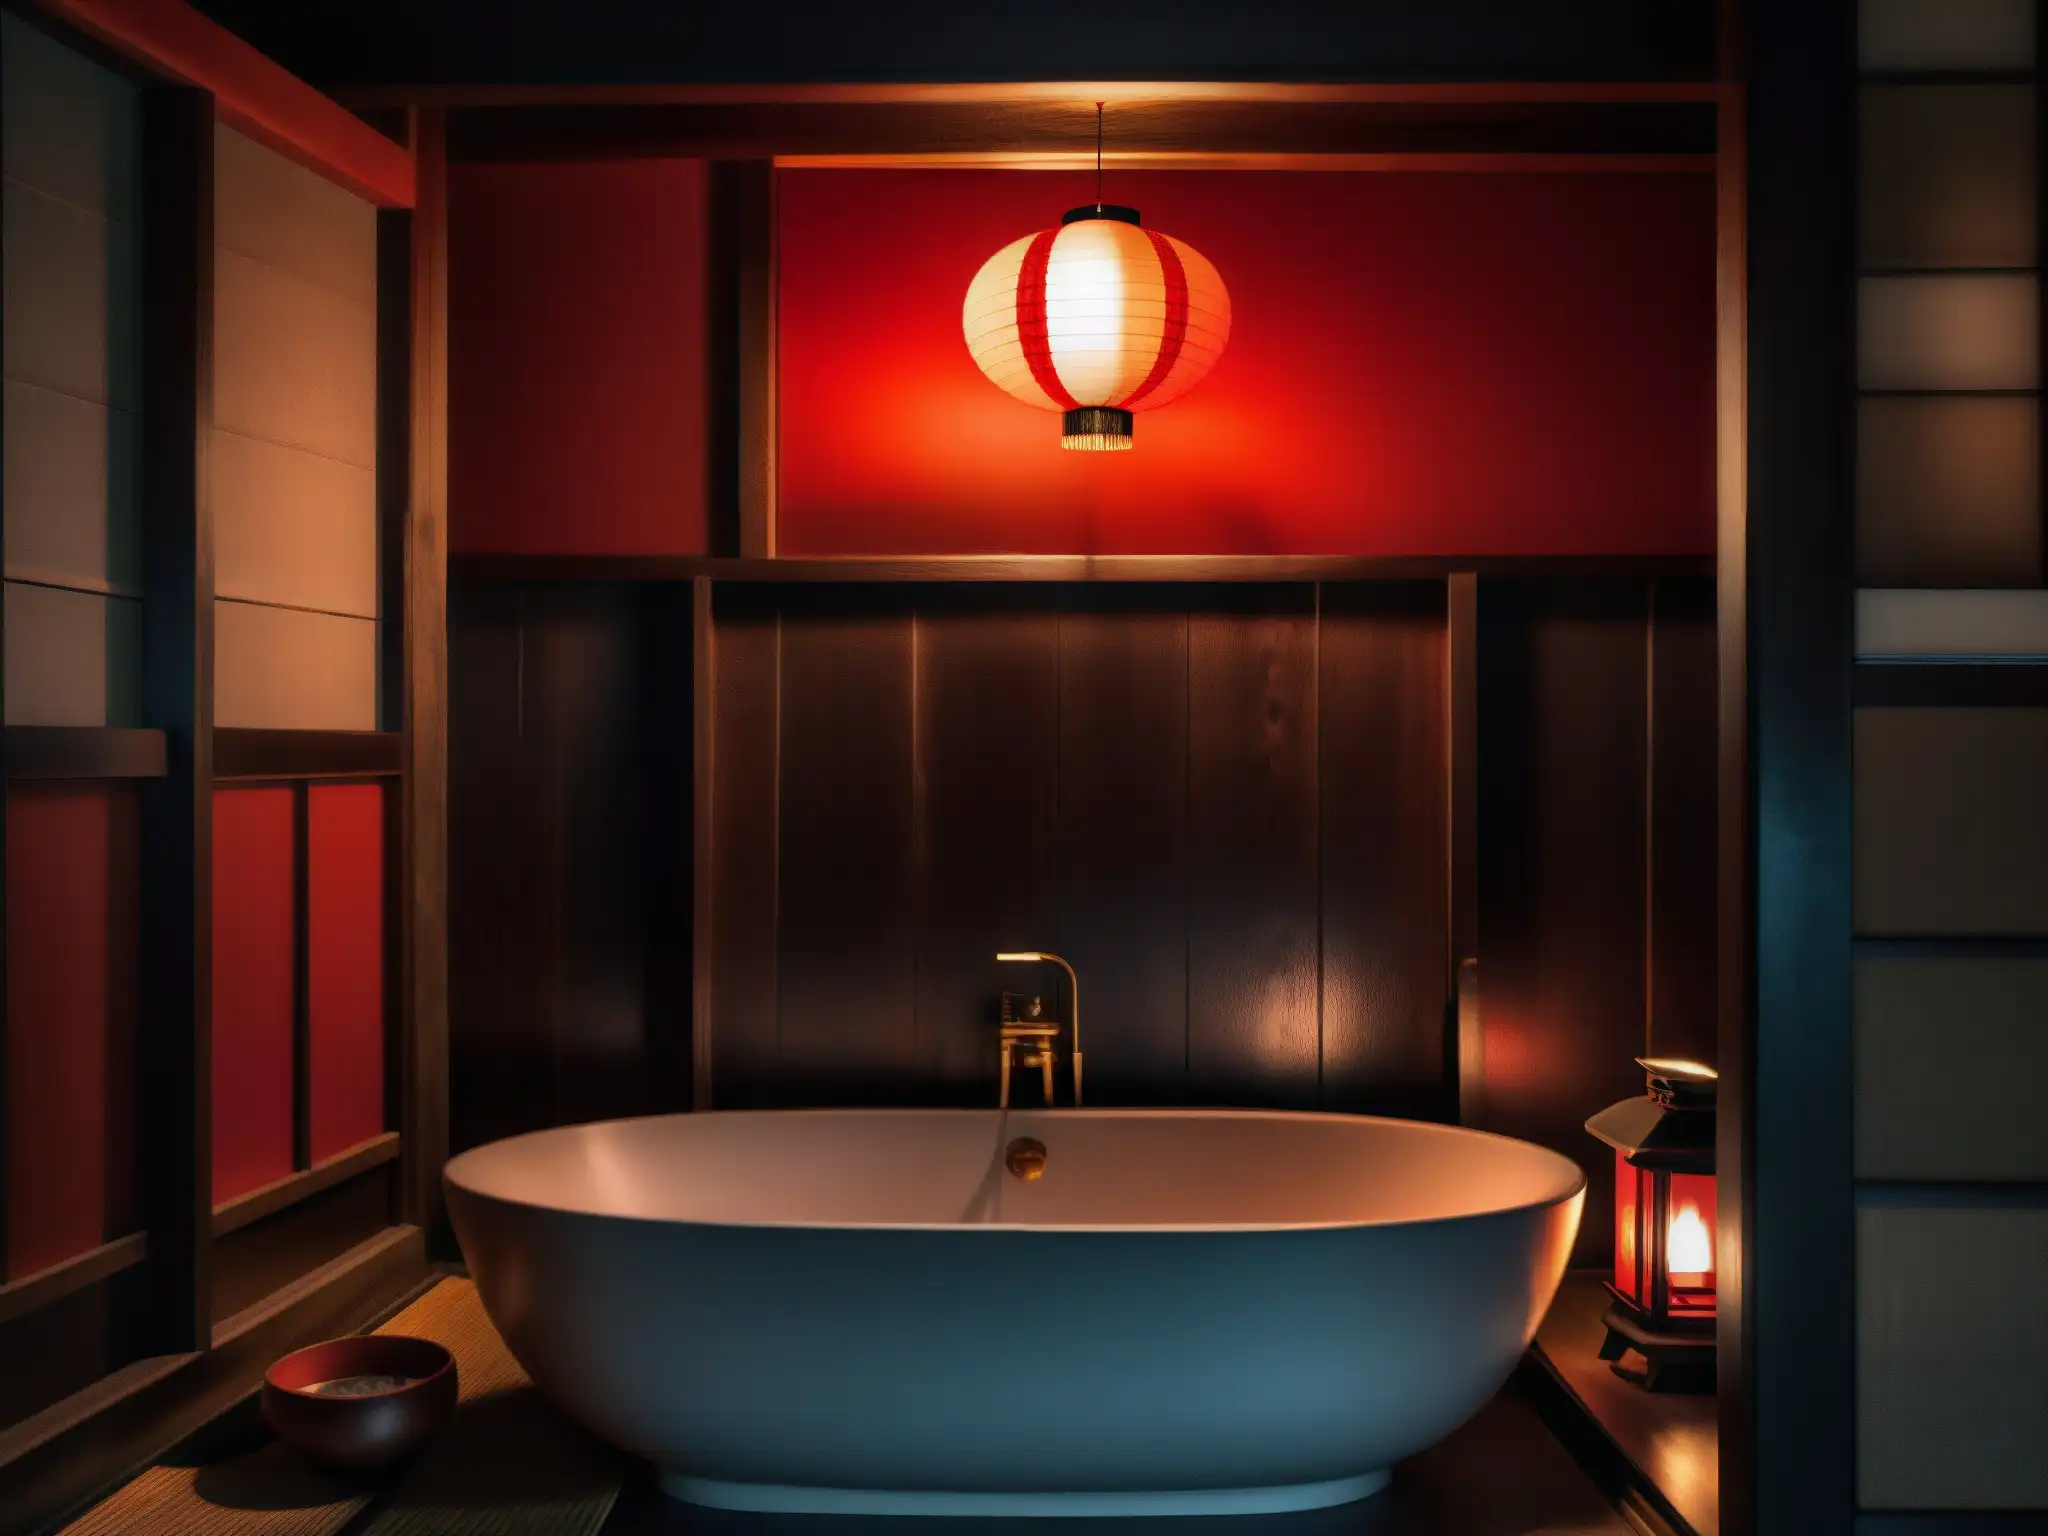 Un baño tradicional japonés con atmósfera misteriosa, una linterna ilumina las sombras